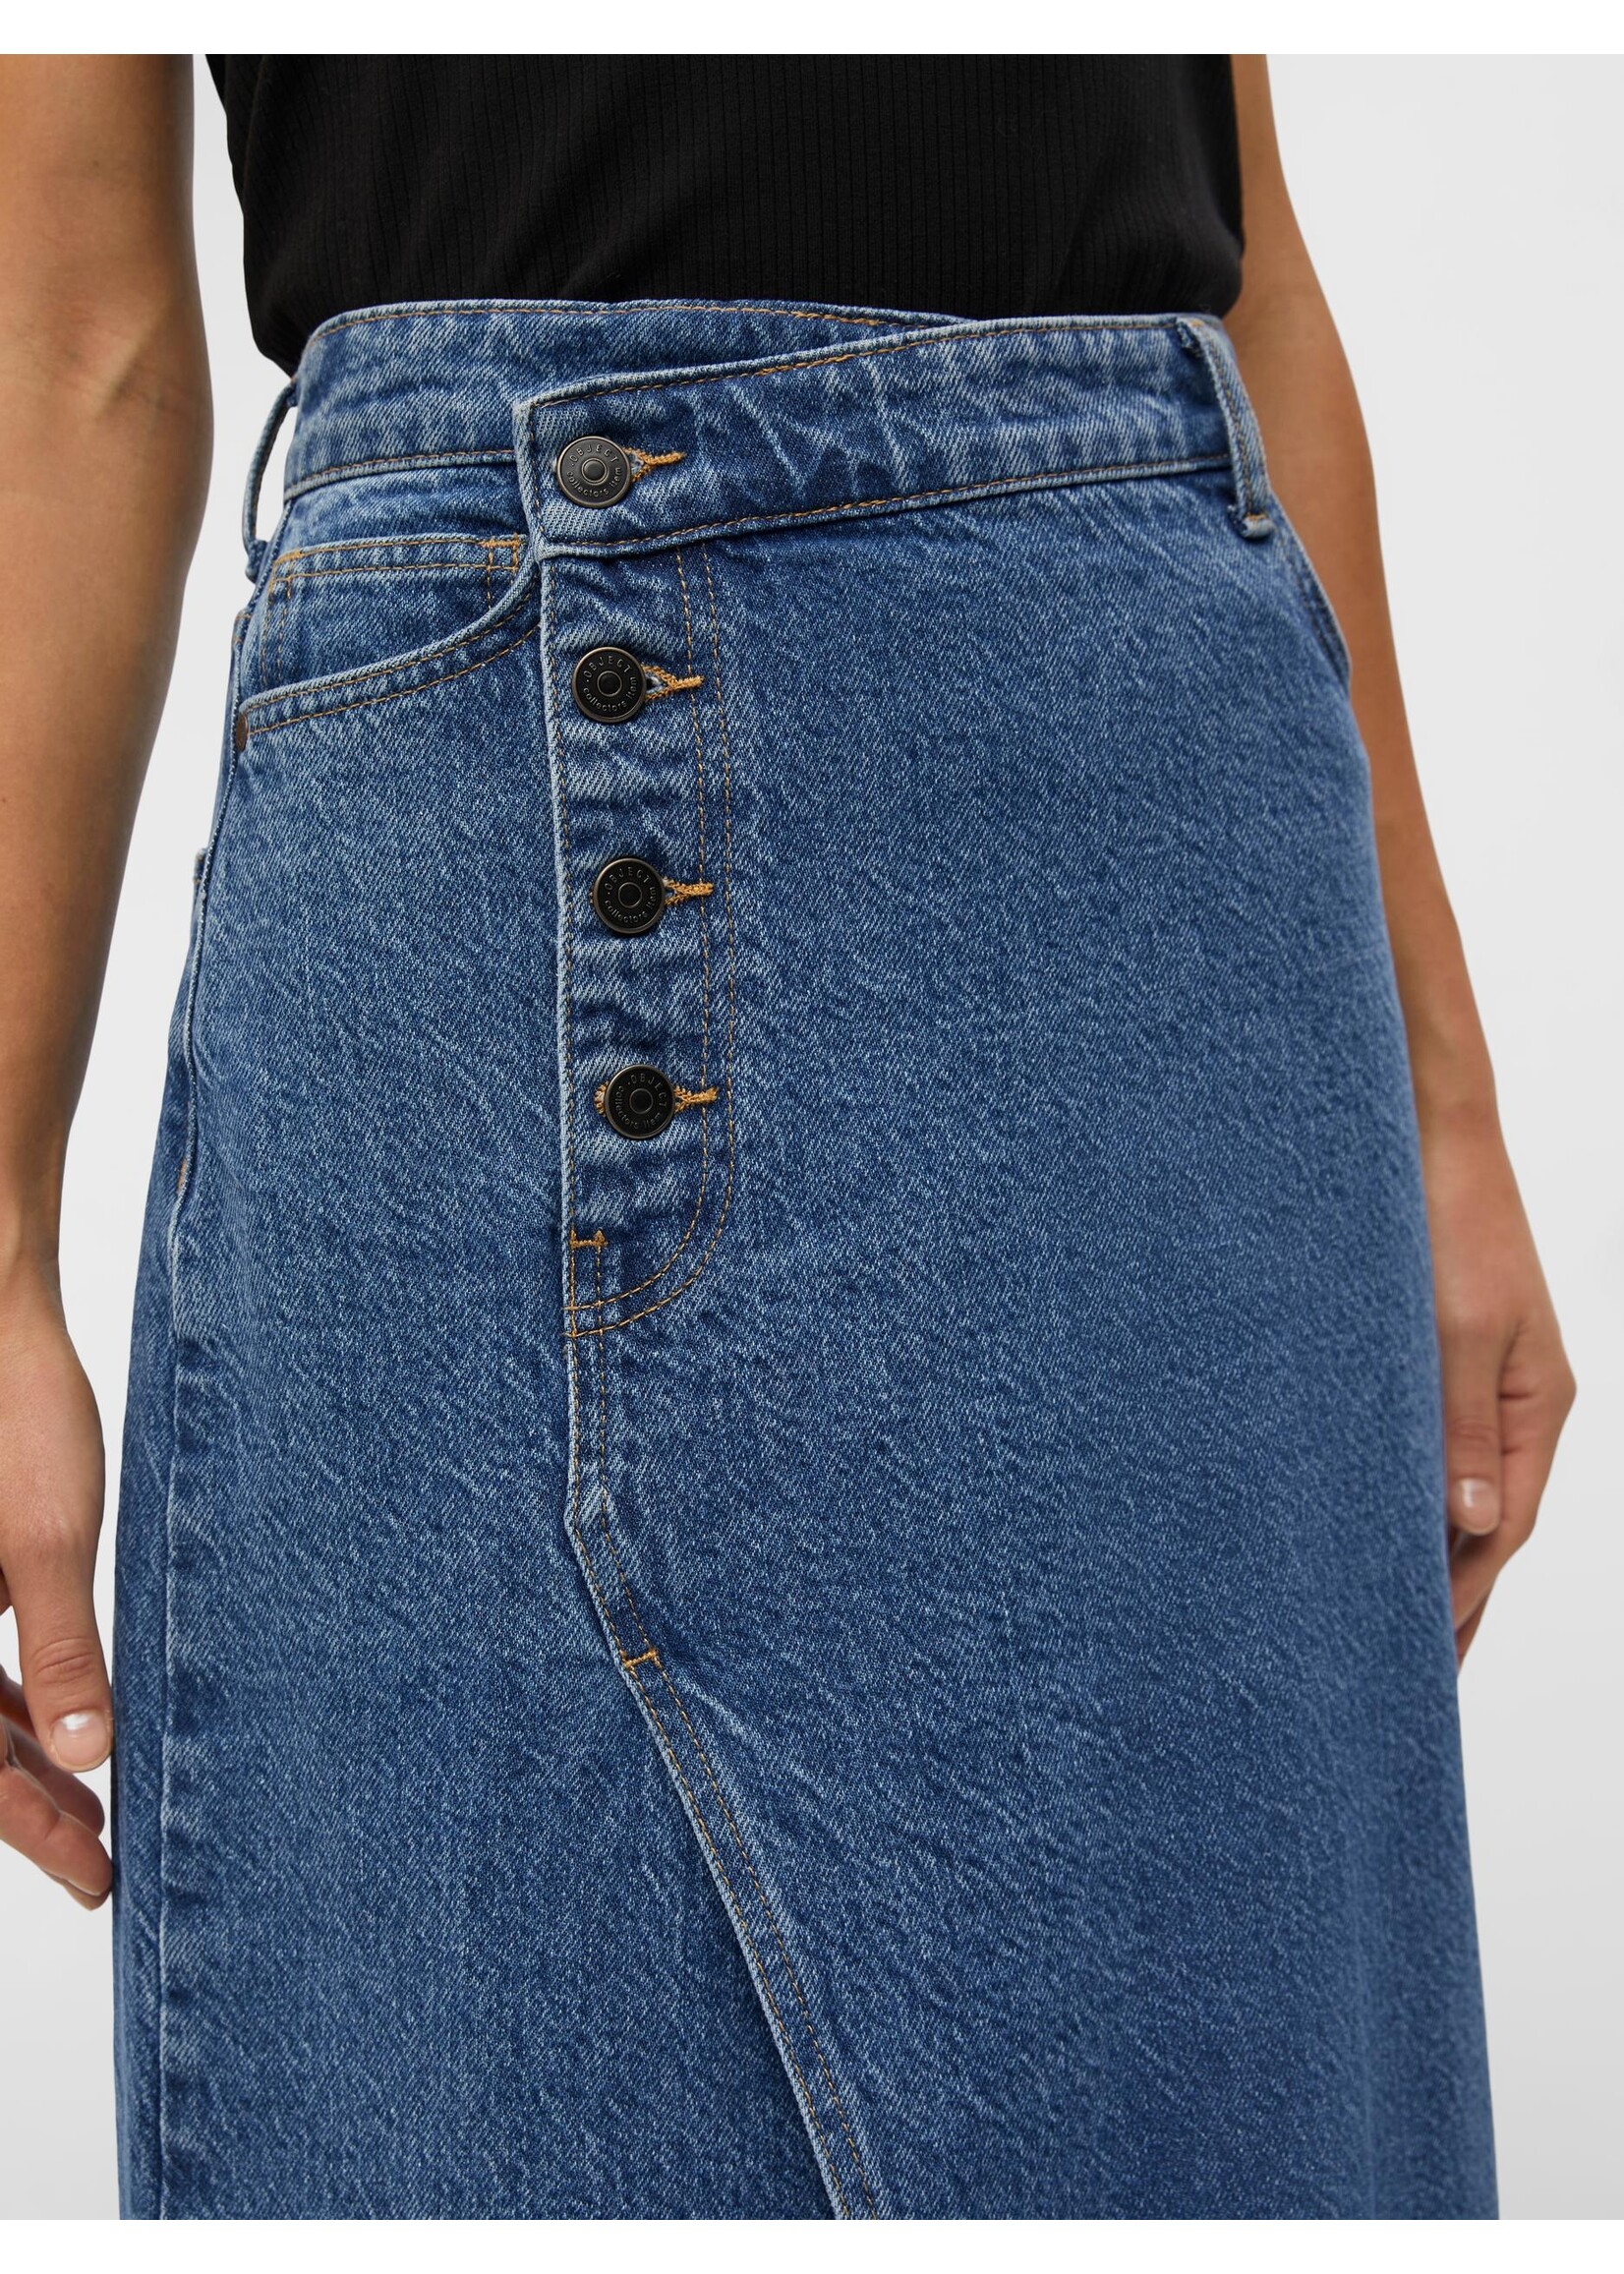 OBJECT OBJHARLOW LONG DENIM SKIRT jeans